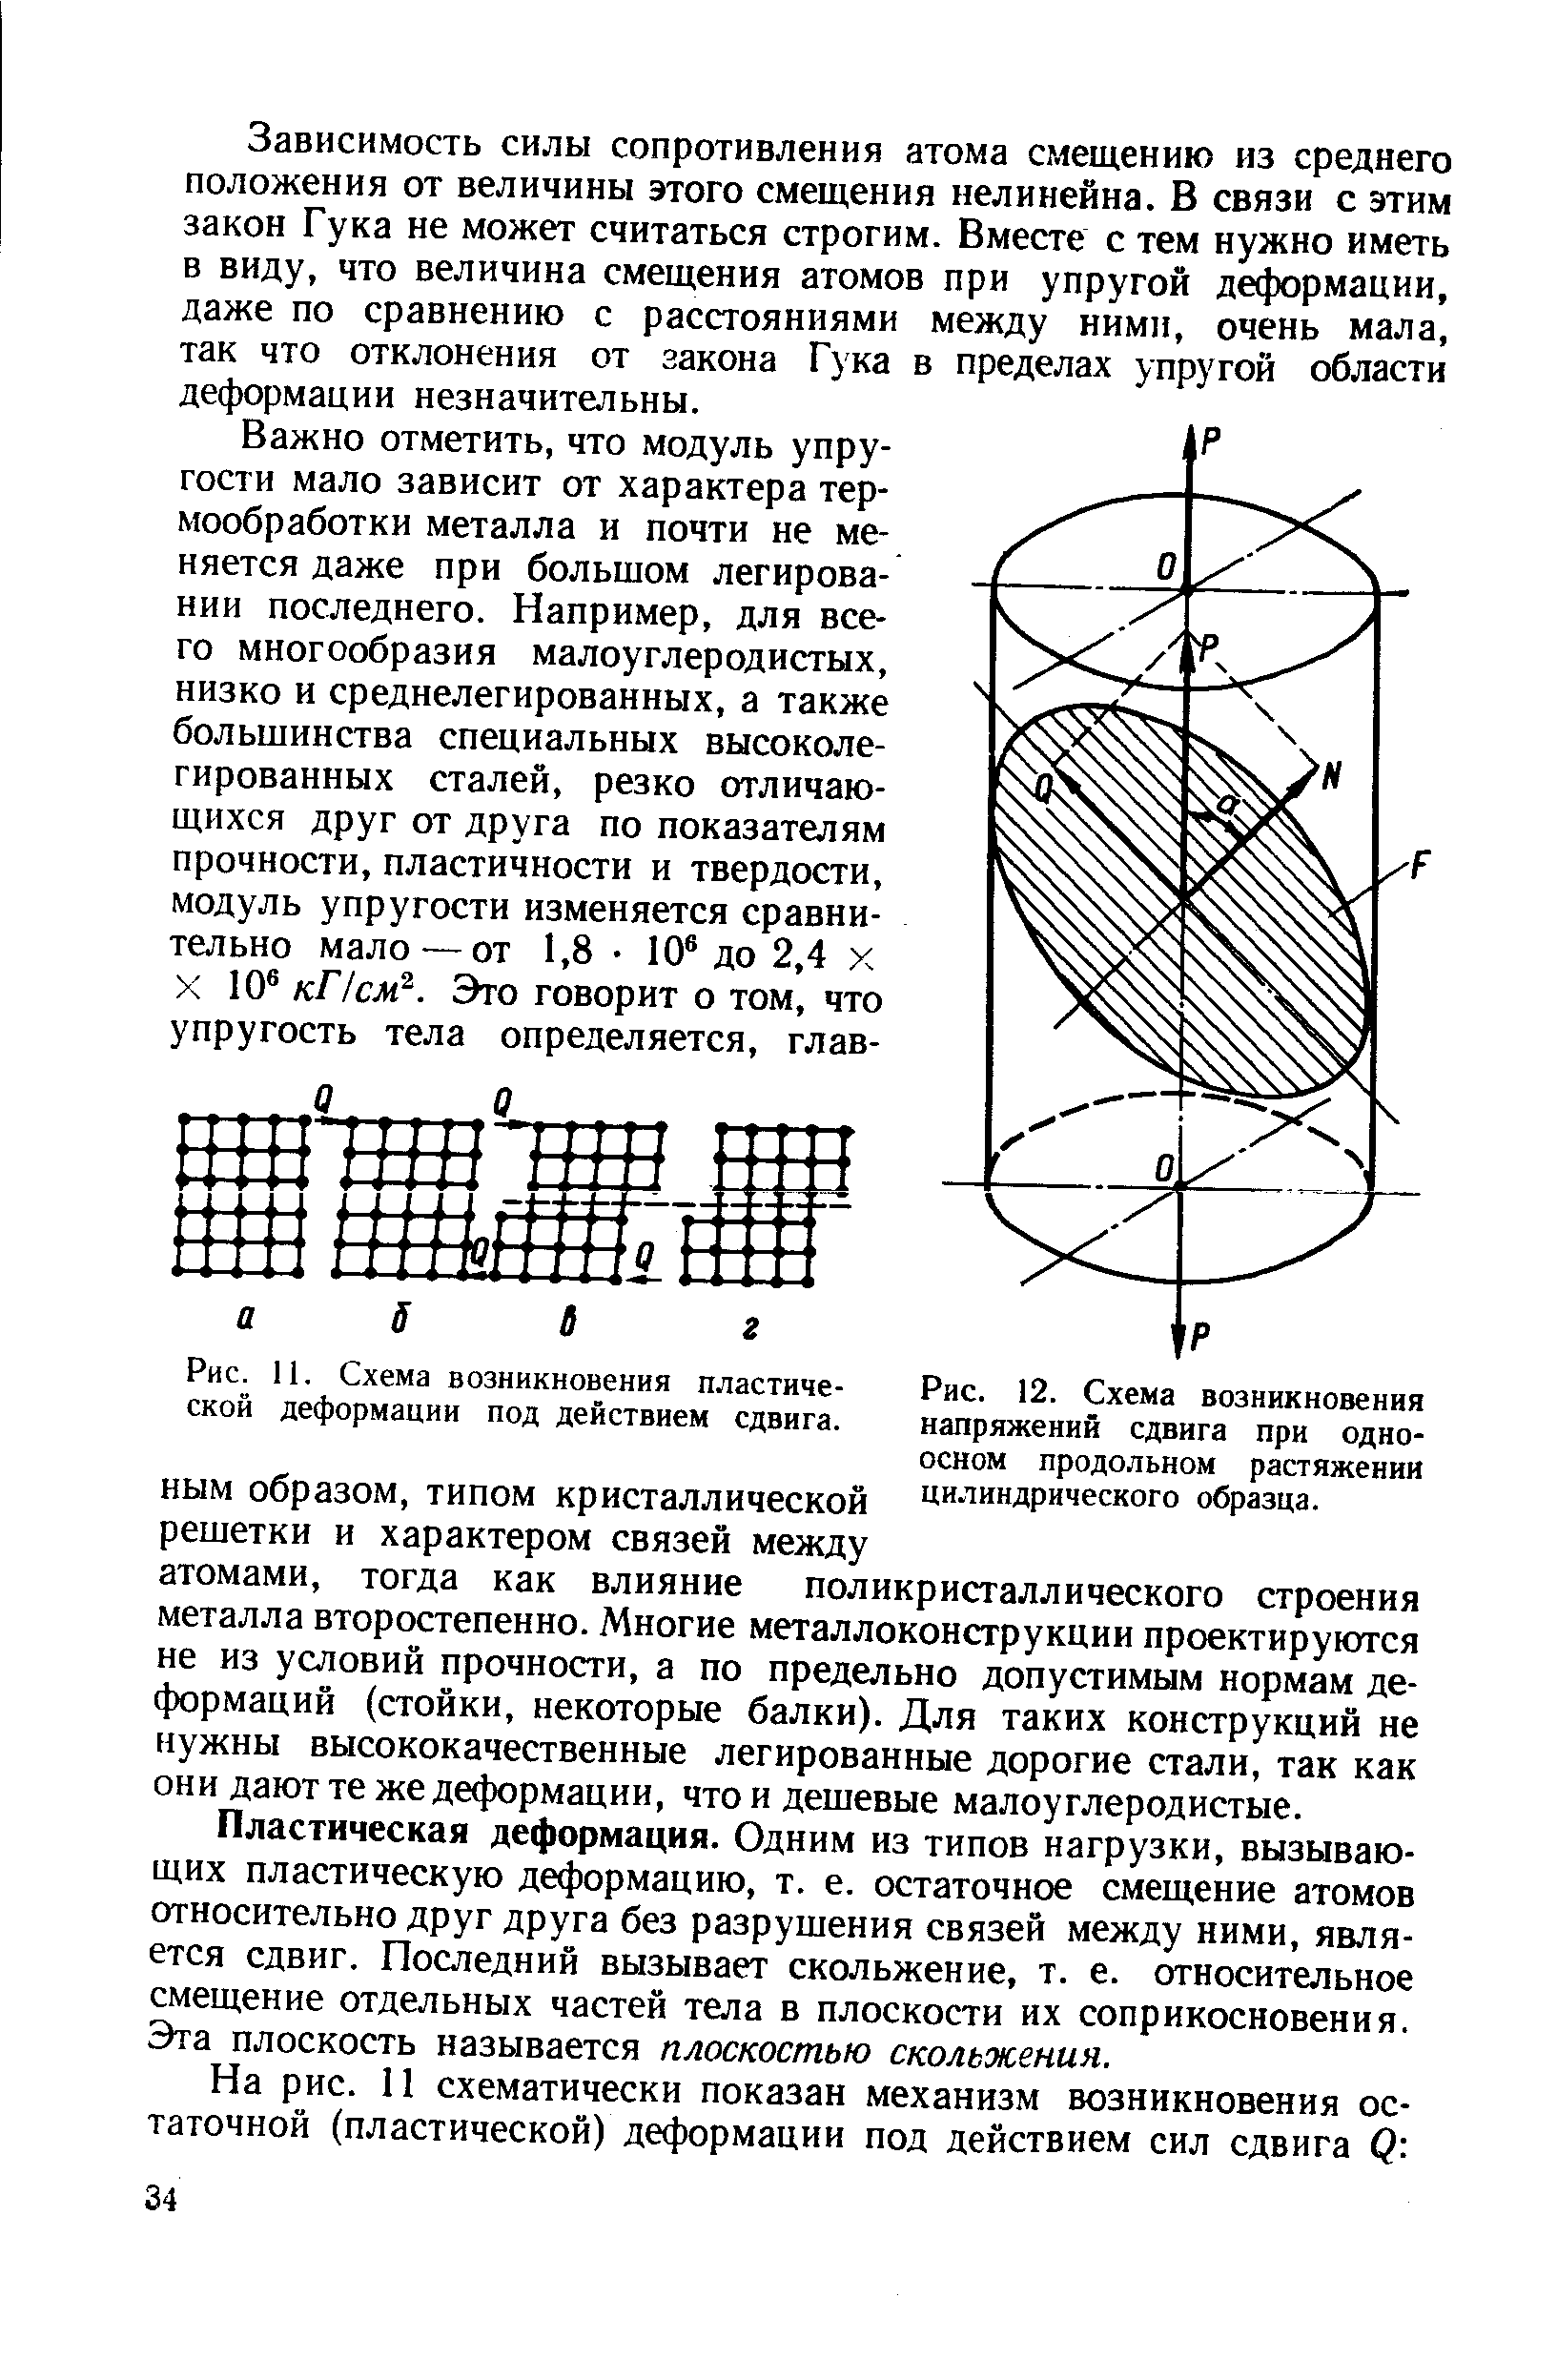 Рис. 12. Схема возникновения напряжений сдвига при одноосном продольном растяжении цилиндрического образца.
